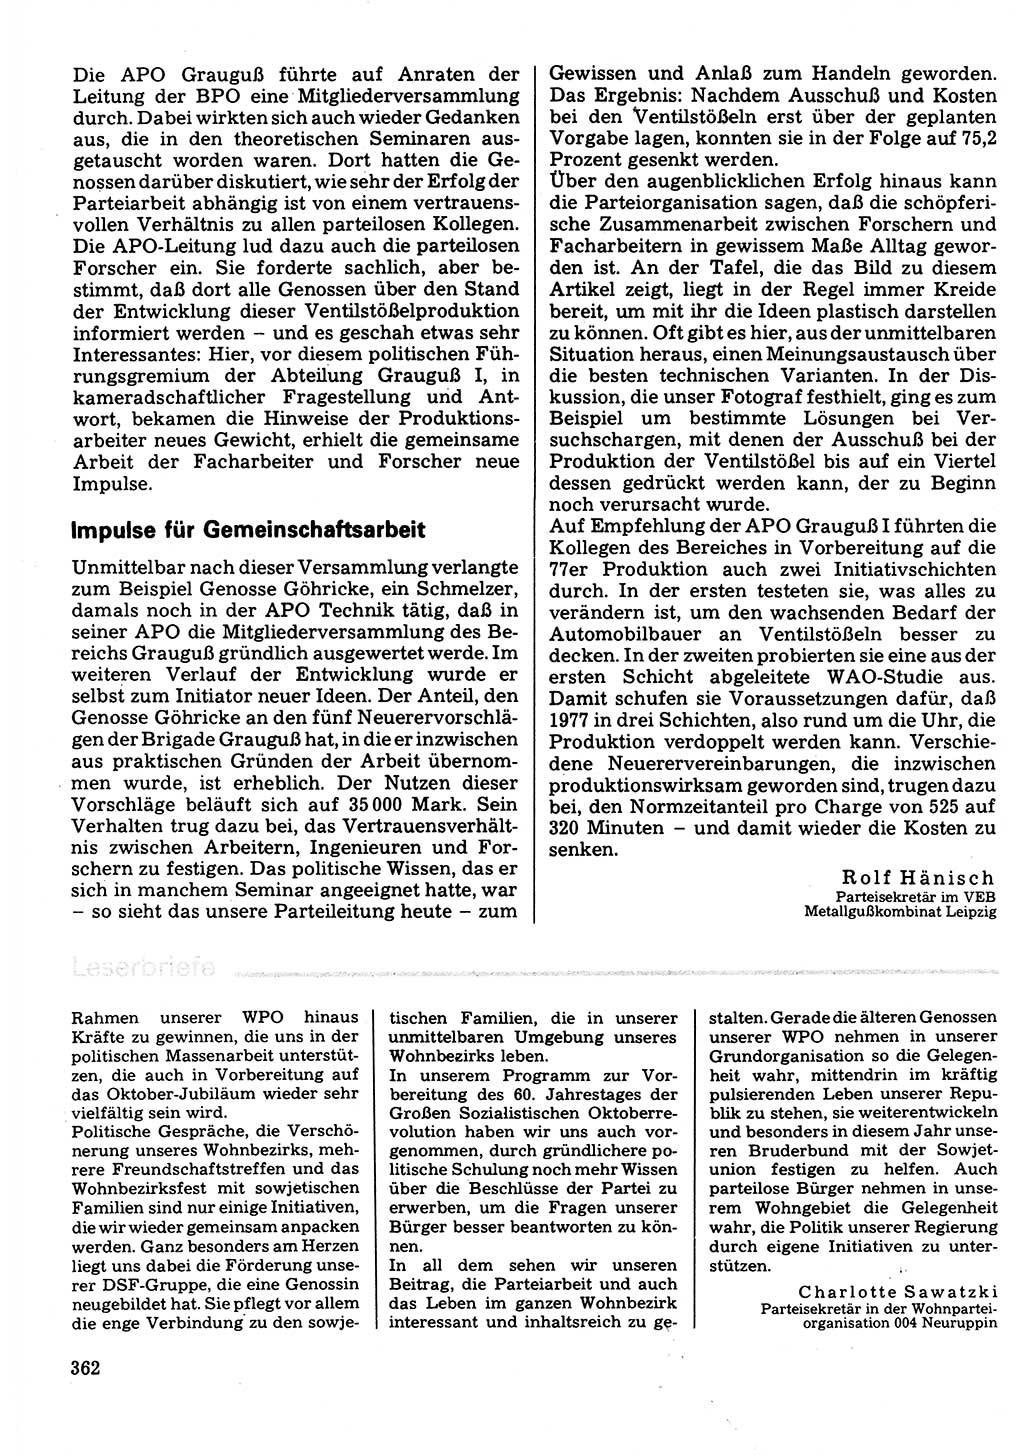 Neuer Weg (NW), Organ des Zentralkomitees (ZK) der SED (Sozialistische Einheitspartei Deutschlands) für Fragen des Parteilebens, 32. Jahrgang [Deutsche Demokratische Republik (DDR)] 1977, Seite 362 (NW ZK SED DDR 1977, S. 362)